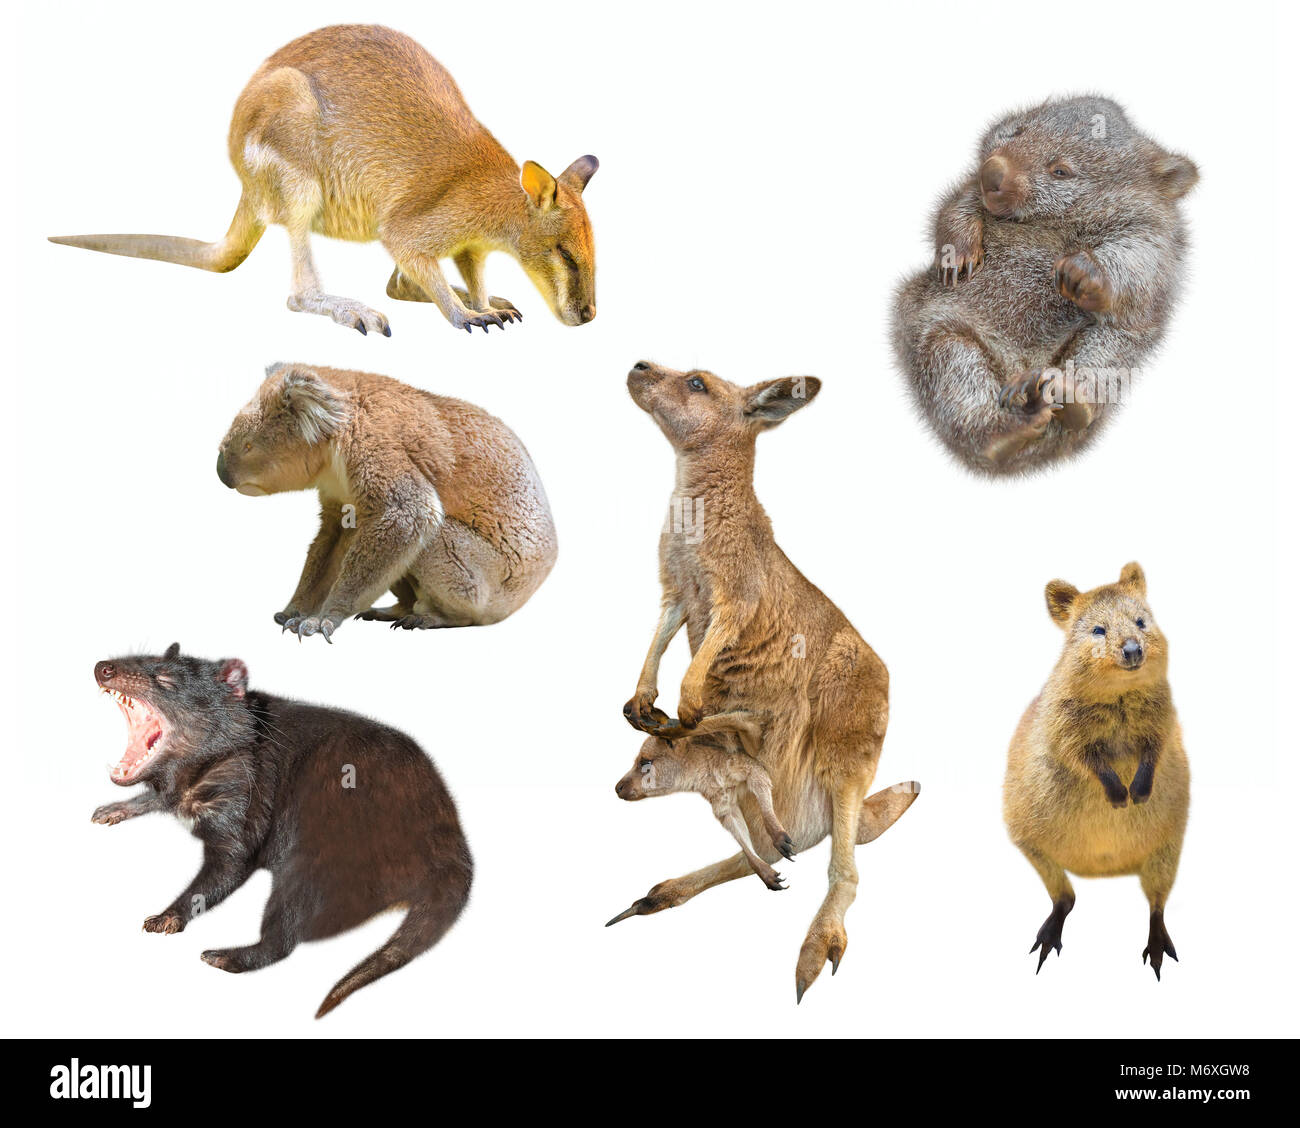 Collage de marsupial Australien mammifères, isolé sur fond blanc. Wallaby, Diable de Tasmanie, le Wombat, le kangourou avec Joey, Quokka et Koala. Banque D'Images